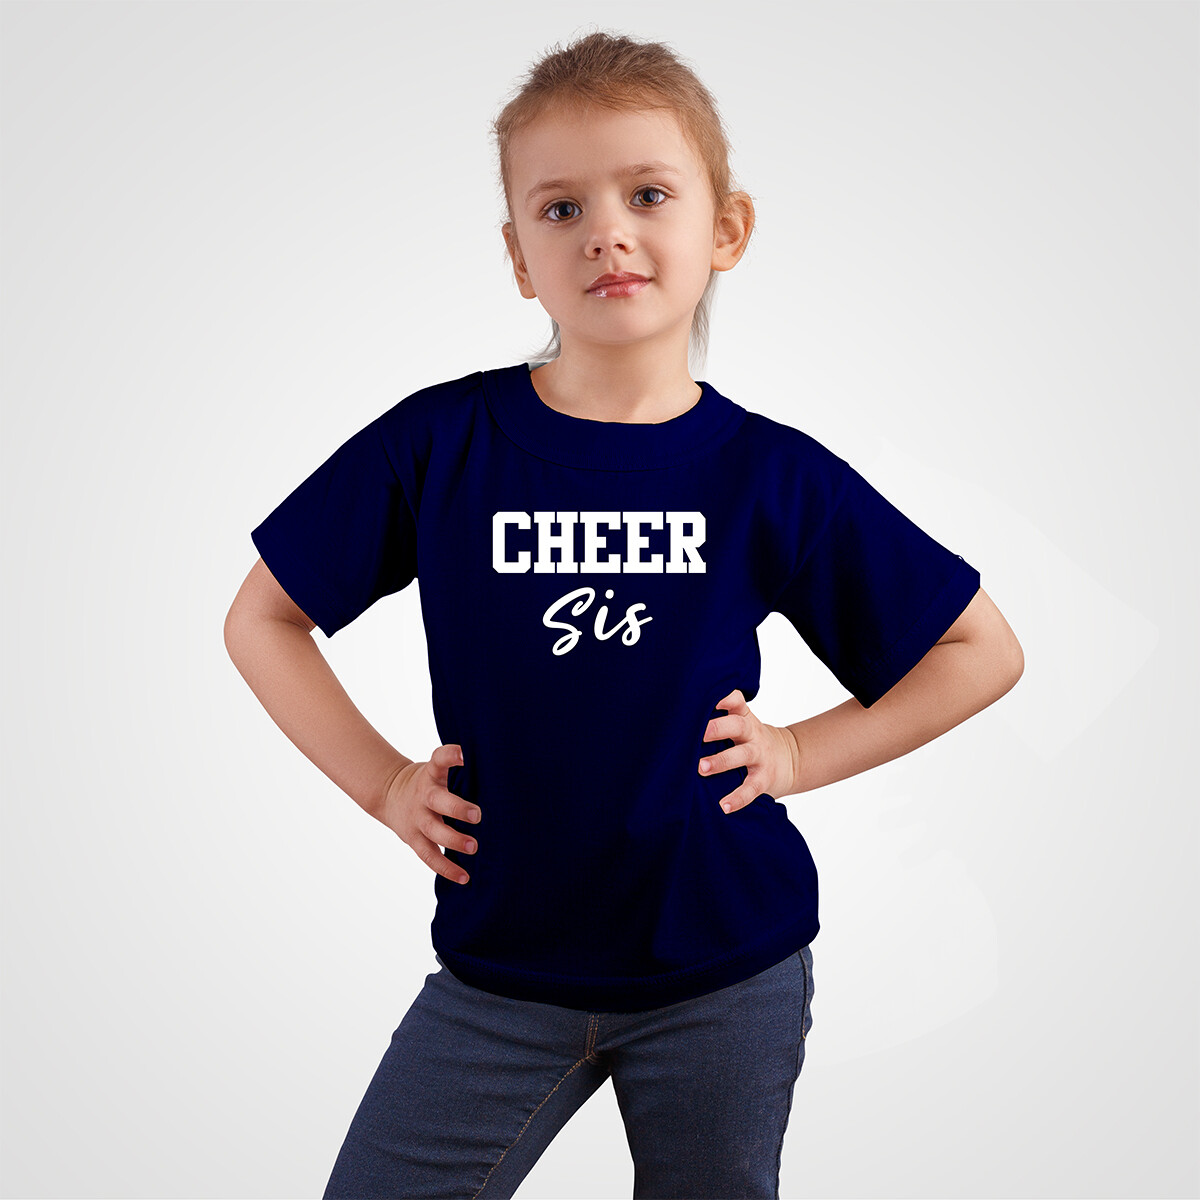 Cheer Sis T-Shirt